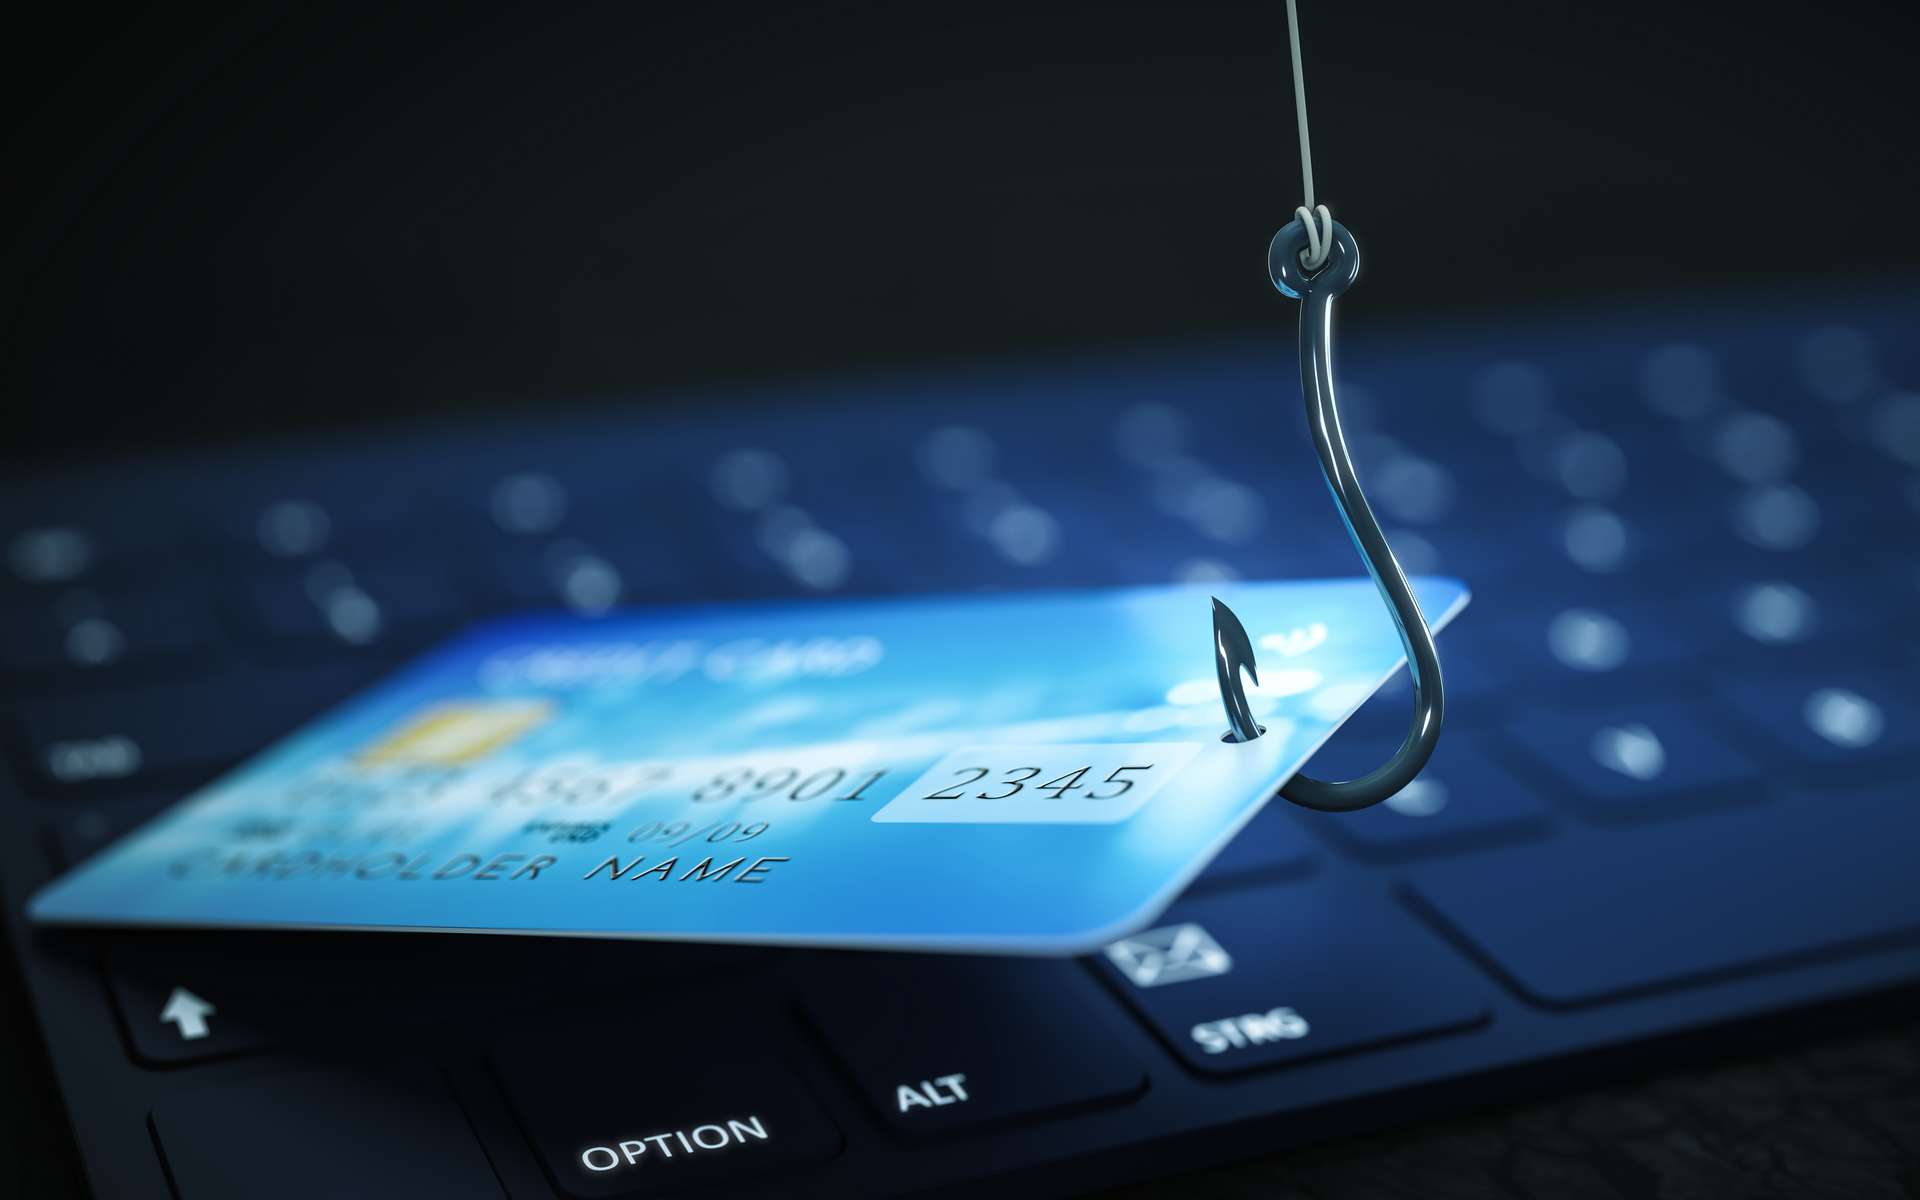 Gli hacker avvertono della tecnologia di hackerare le loro carte di credito, avverte Microsoft